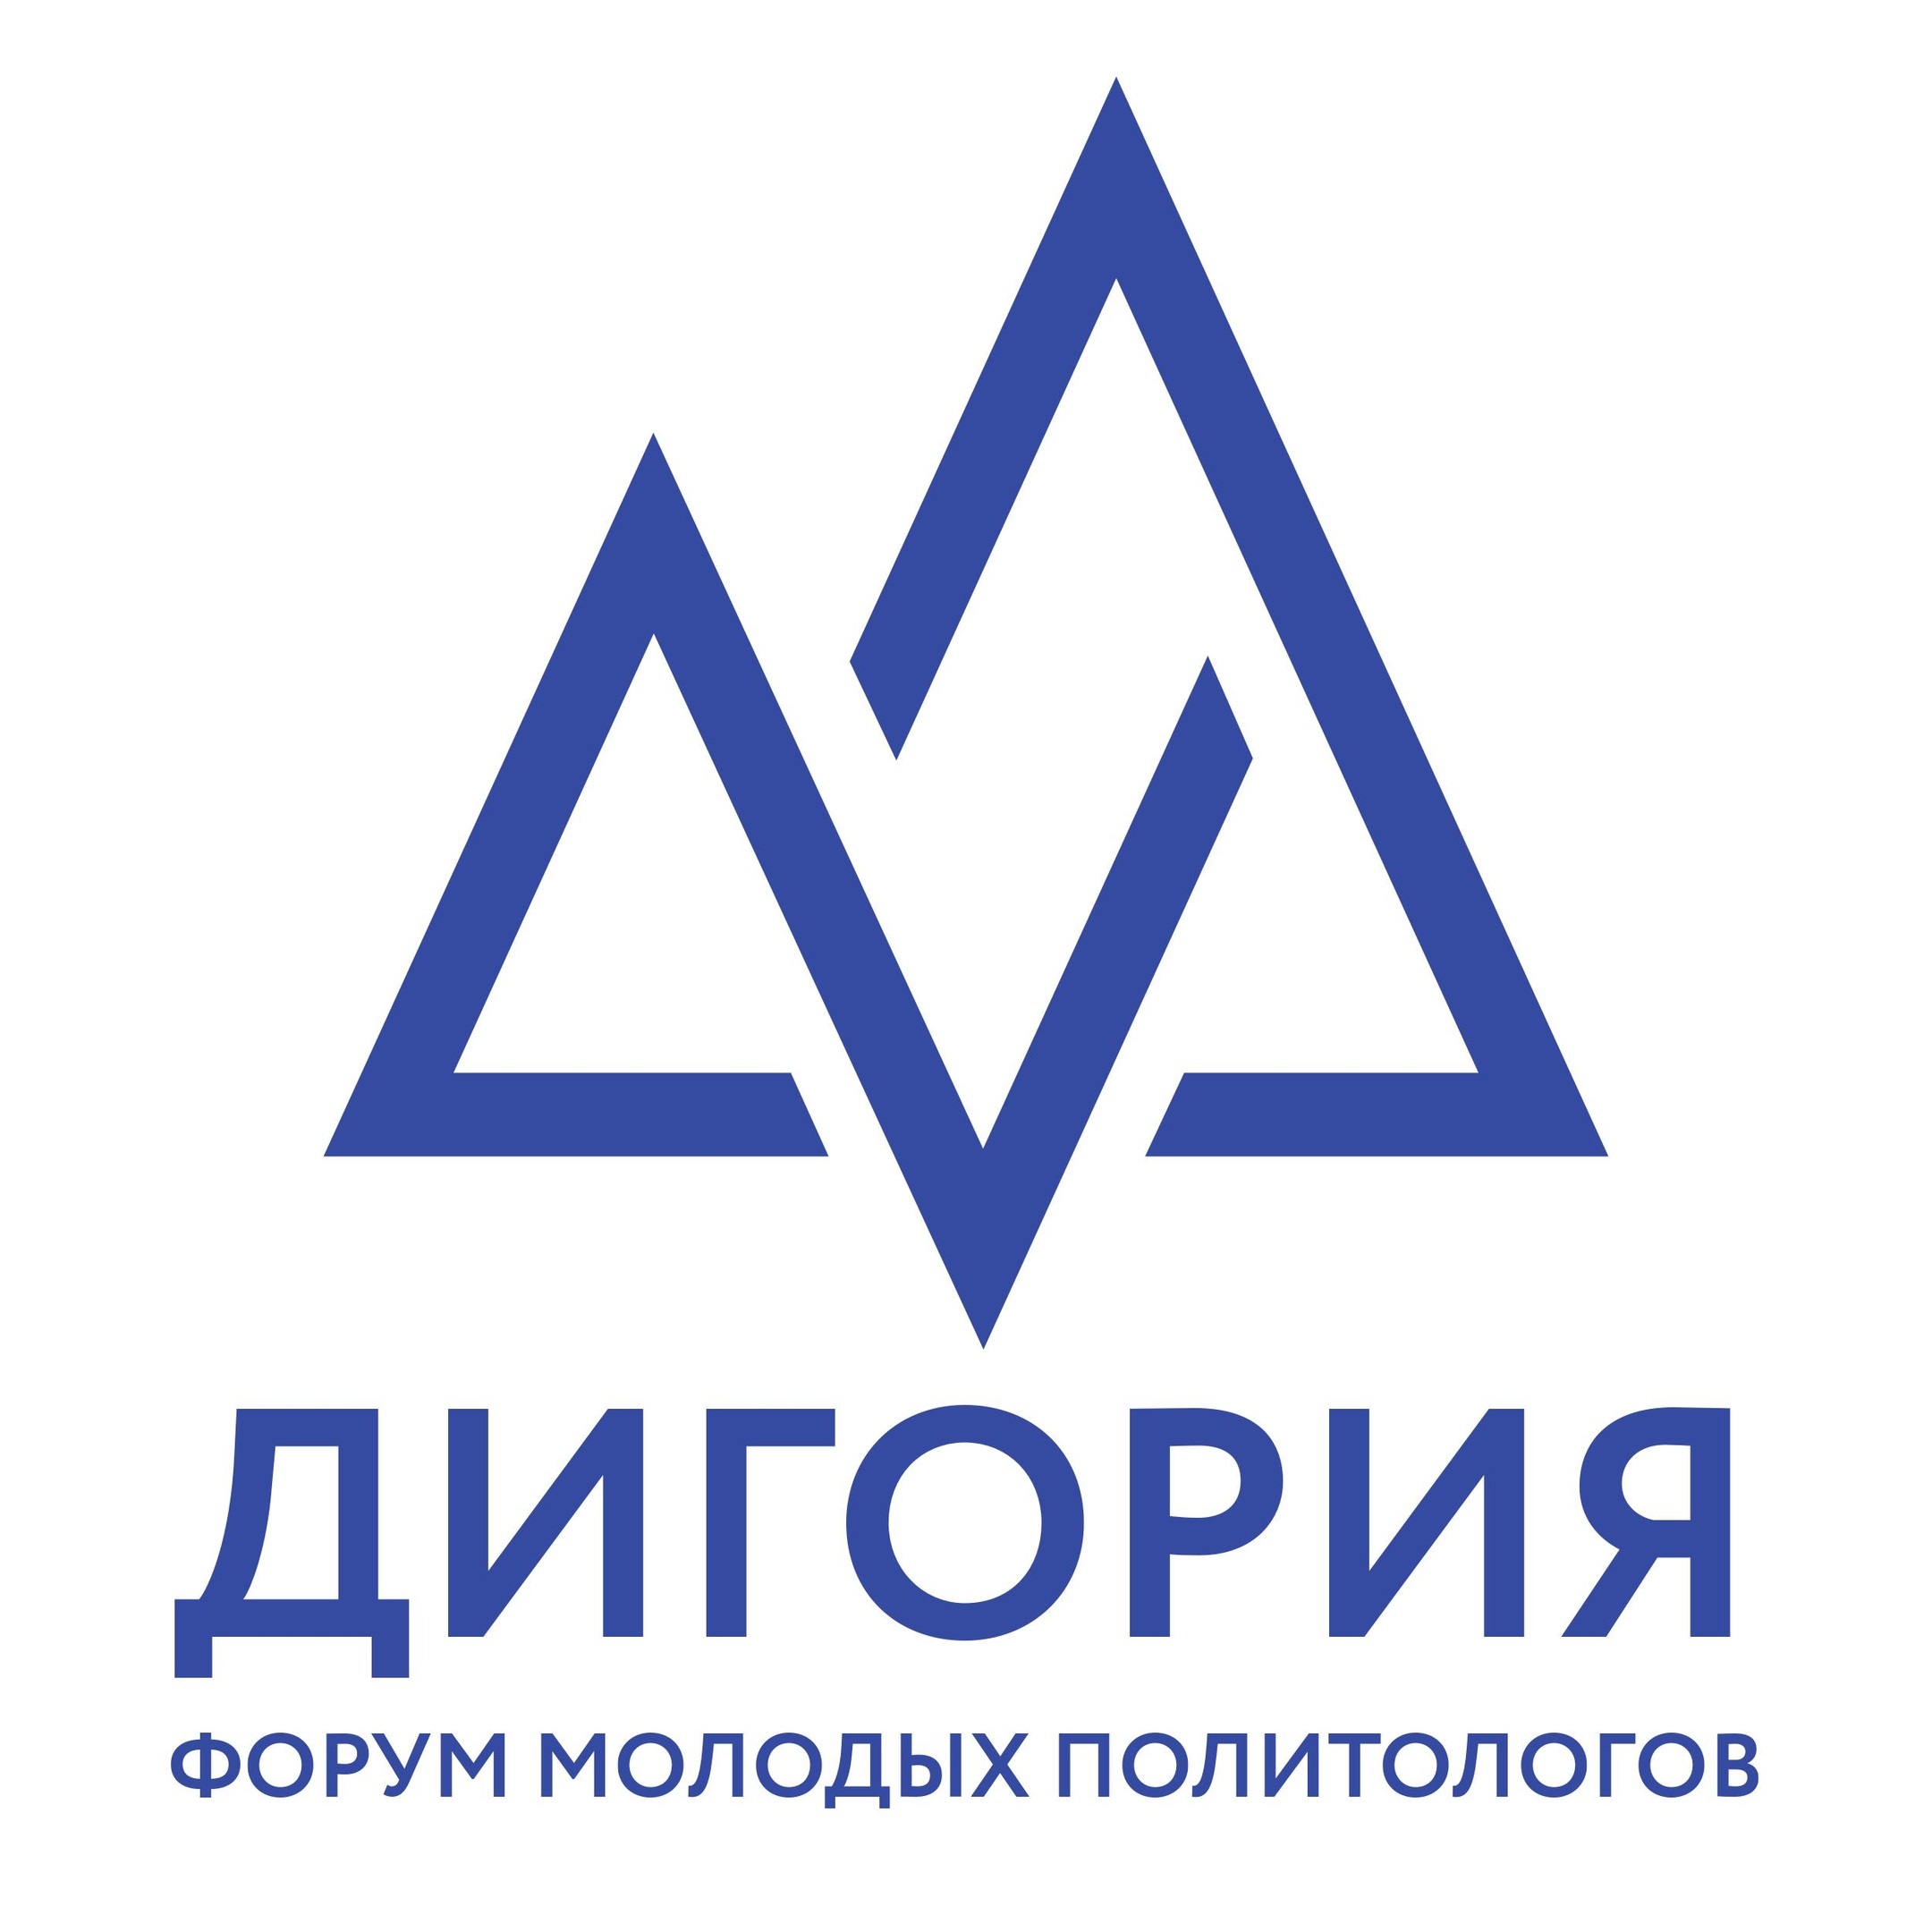 форум молодых политологов России «Дигория»